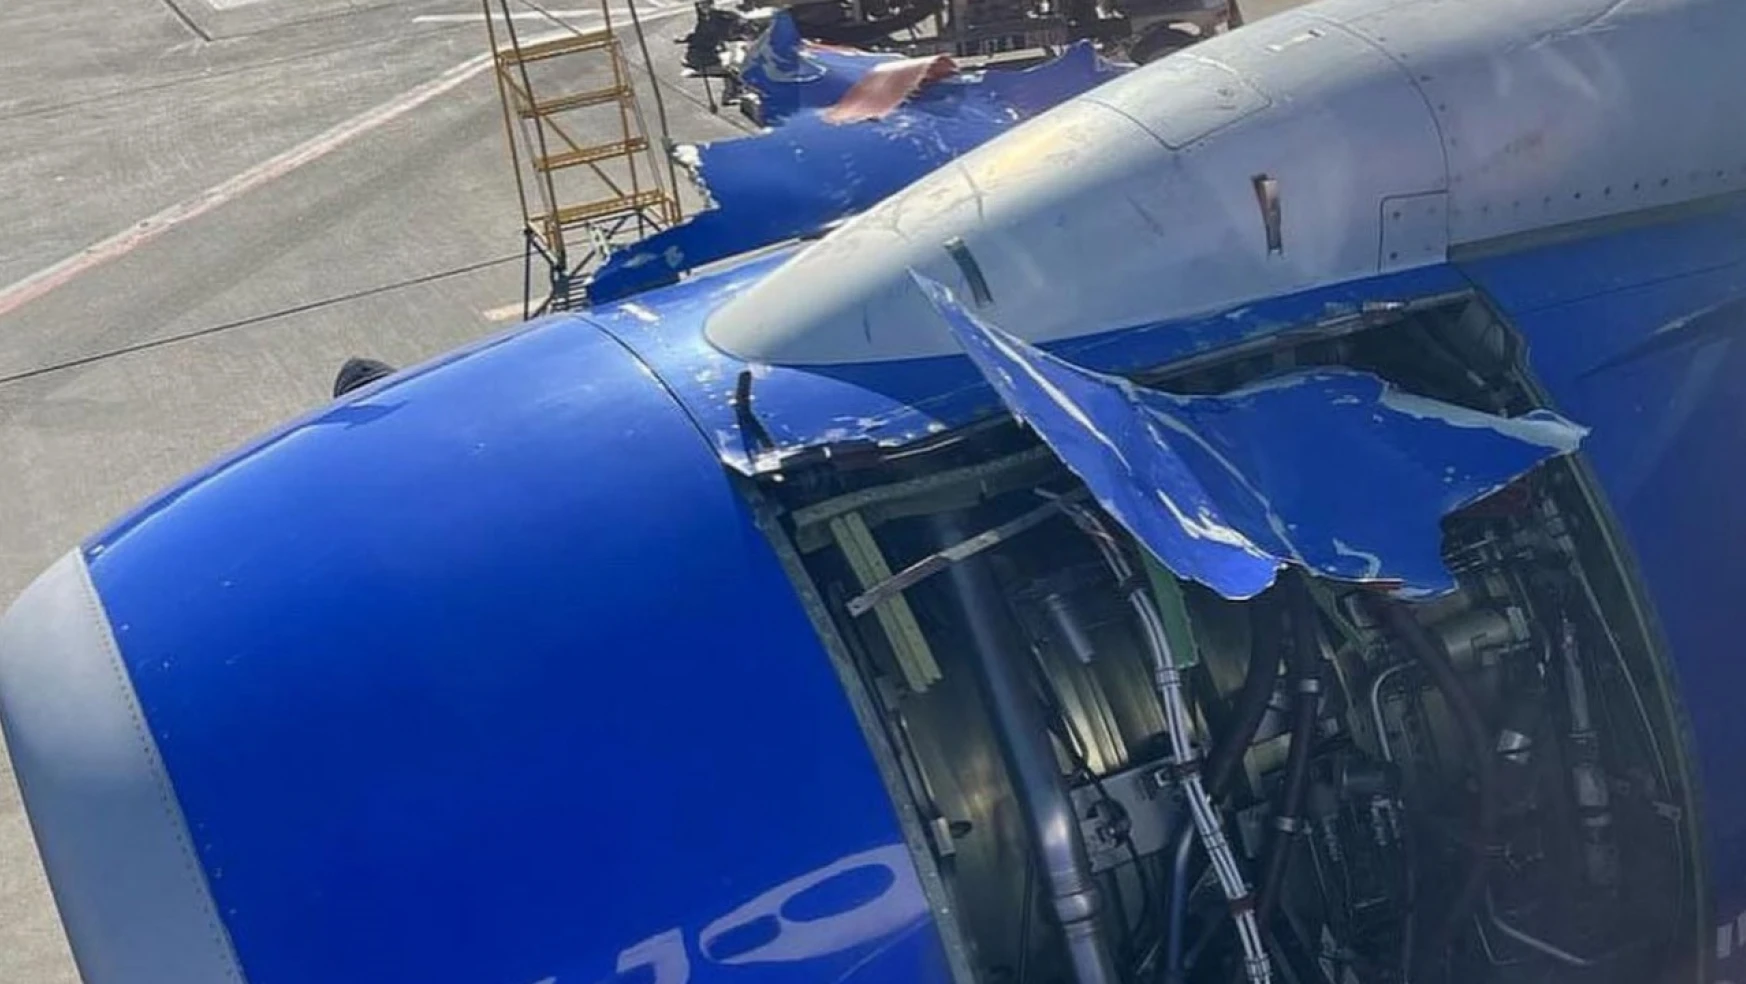 ABD'de kalkış sırasında uçağın motor kapağı koptu